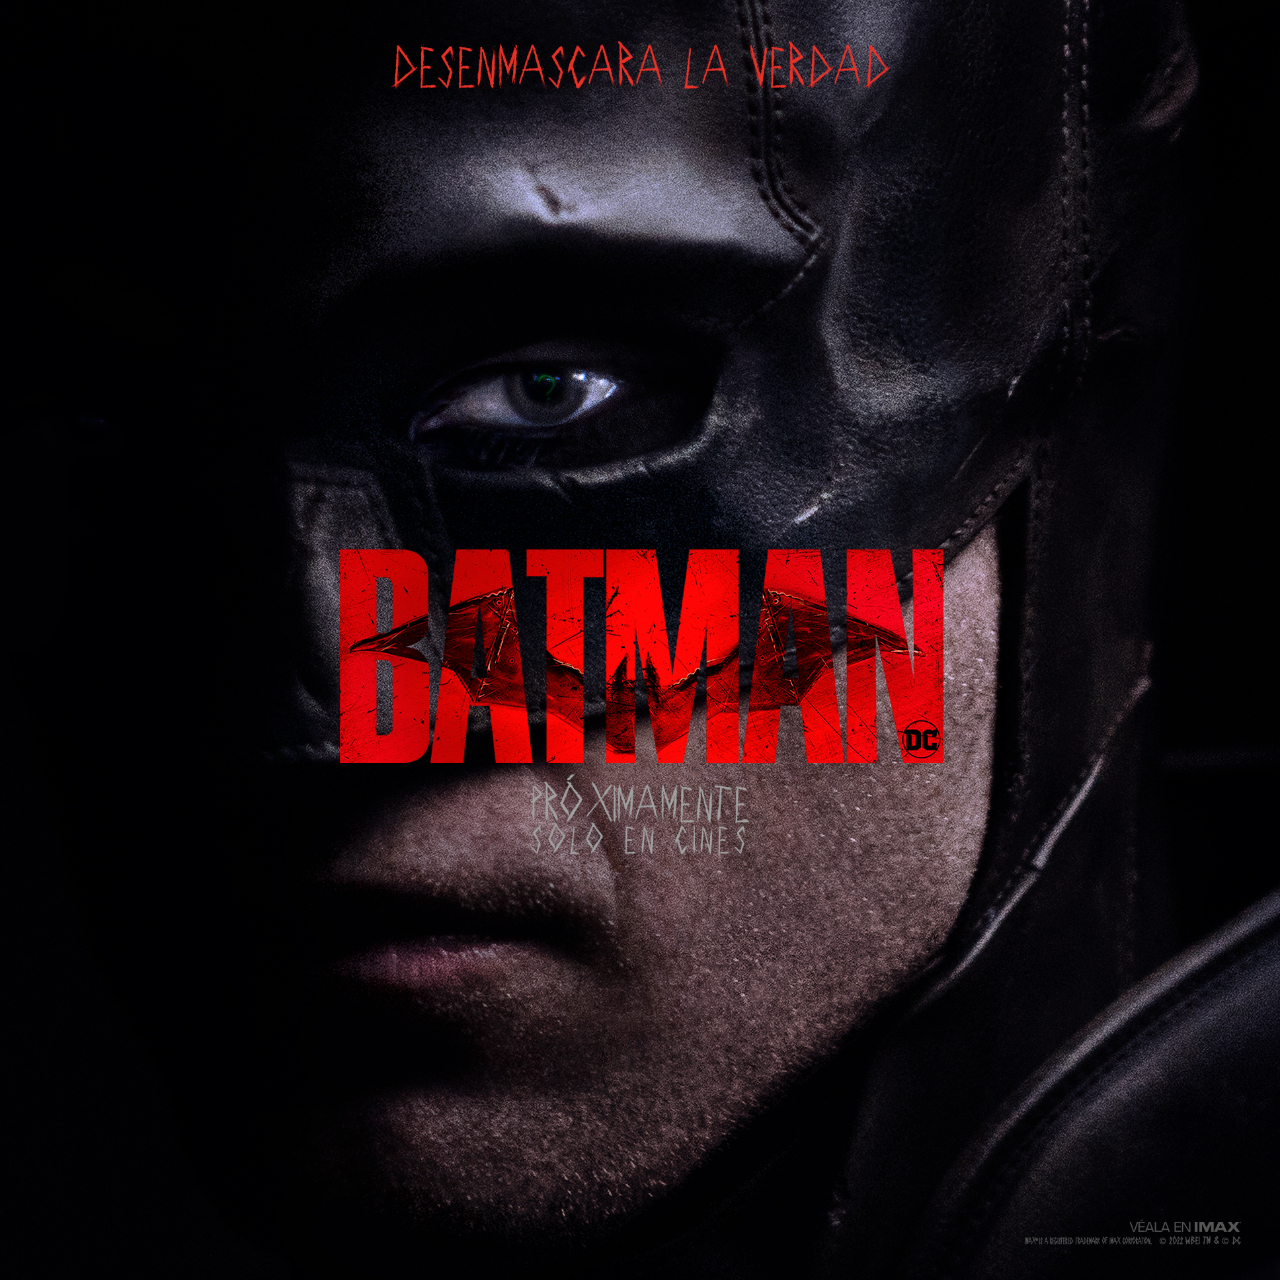 Nuevos detalles de “The Batman”: duración, pósters y más novedades de la  próxima película de Warner y DC comics - Infobae